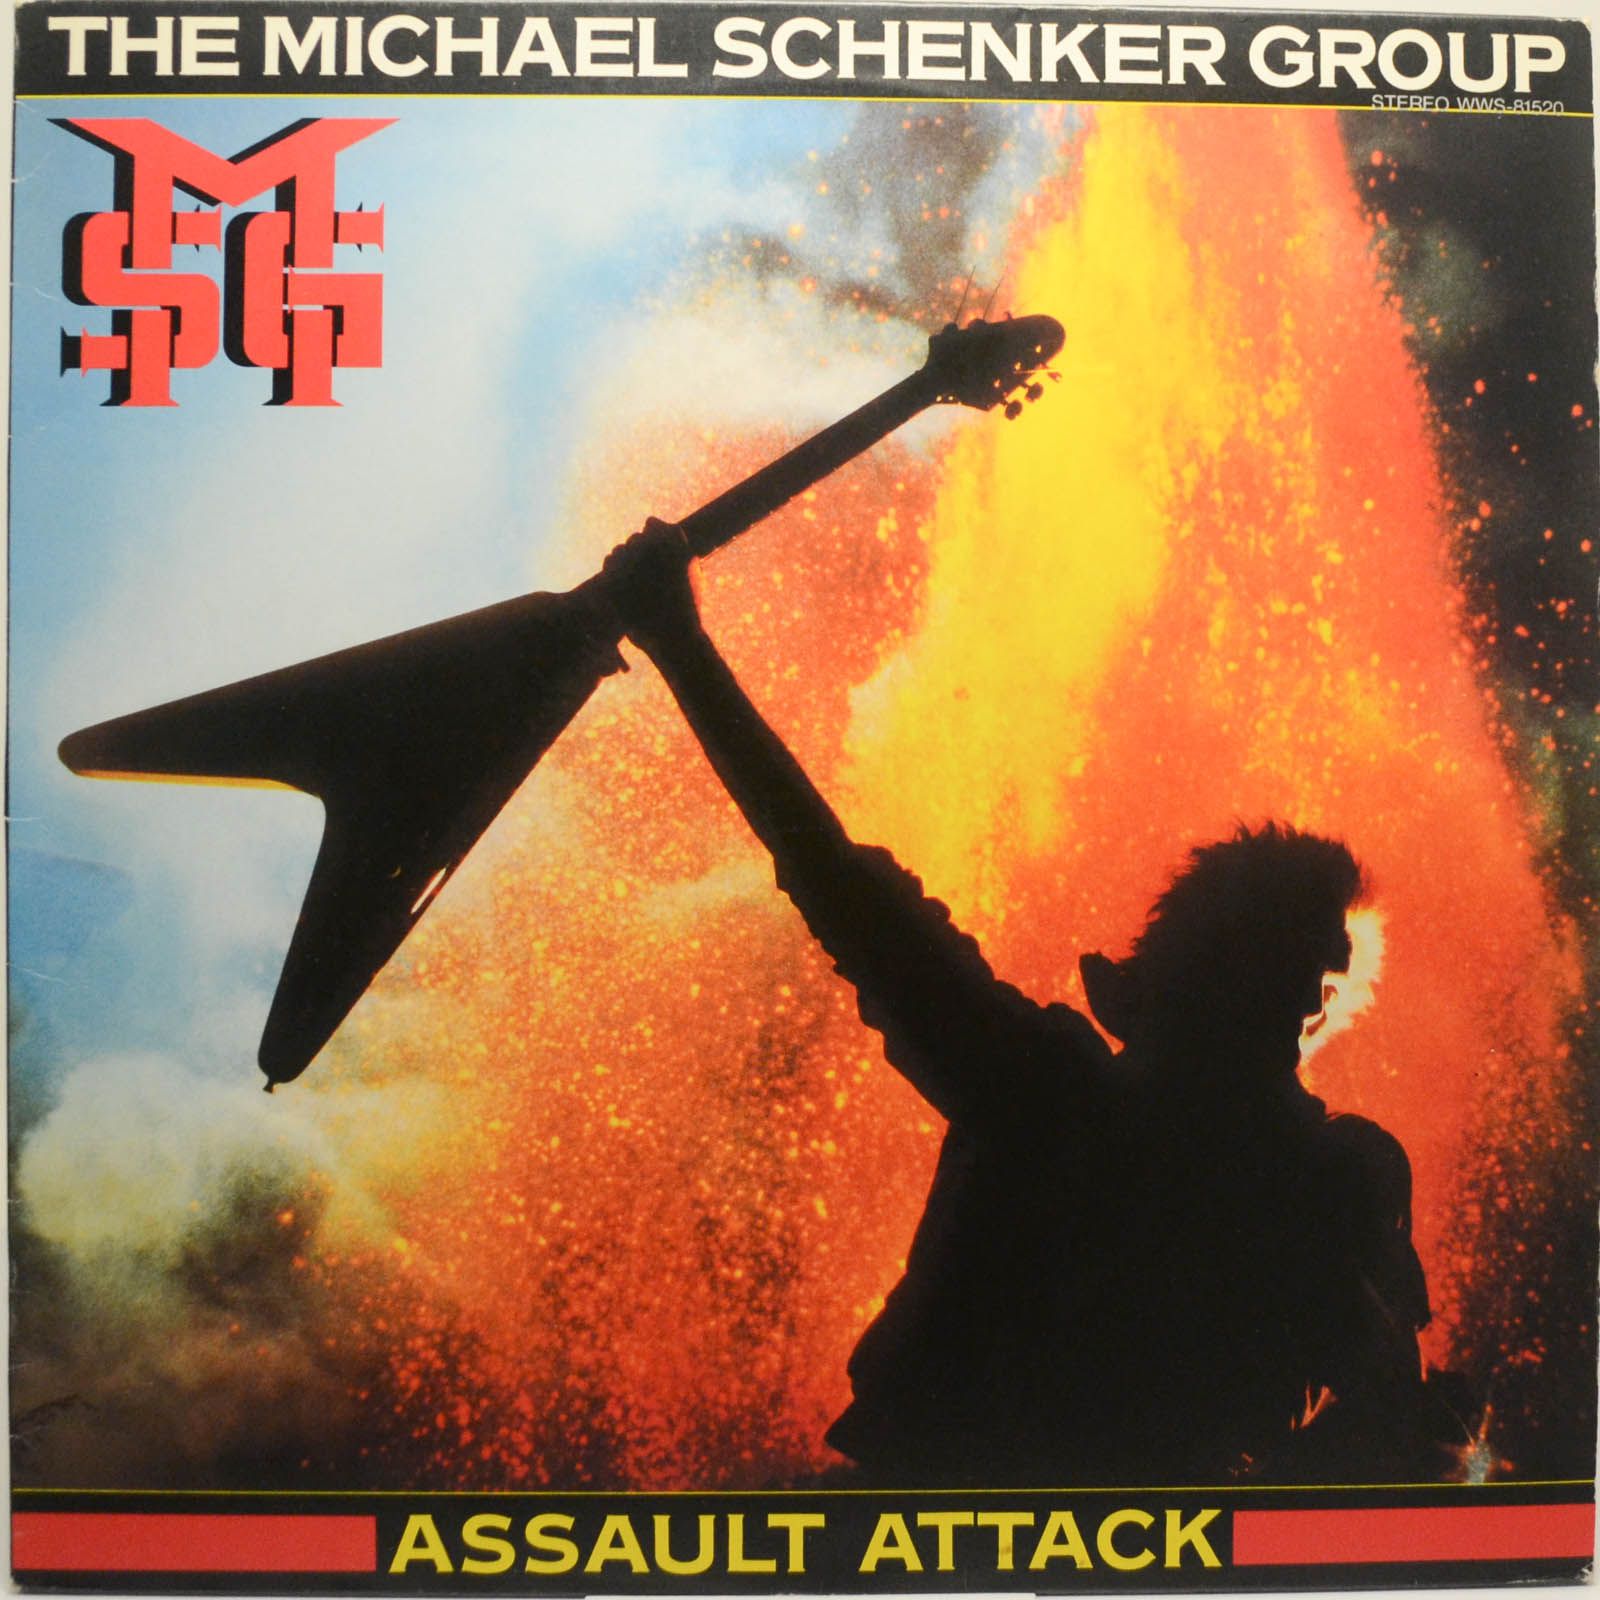 The Michael Schenker Group — Assault Attack, 1982